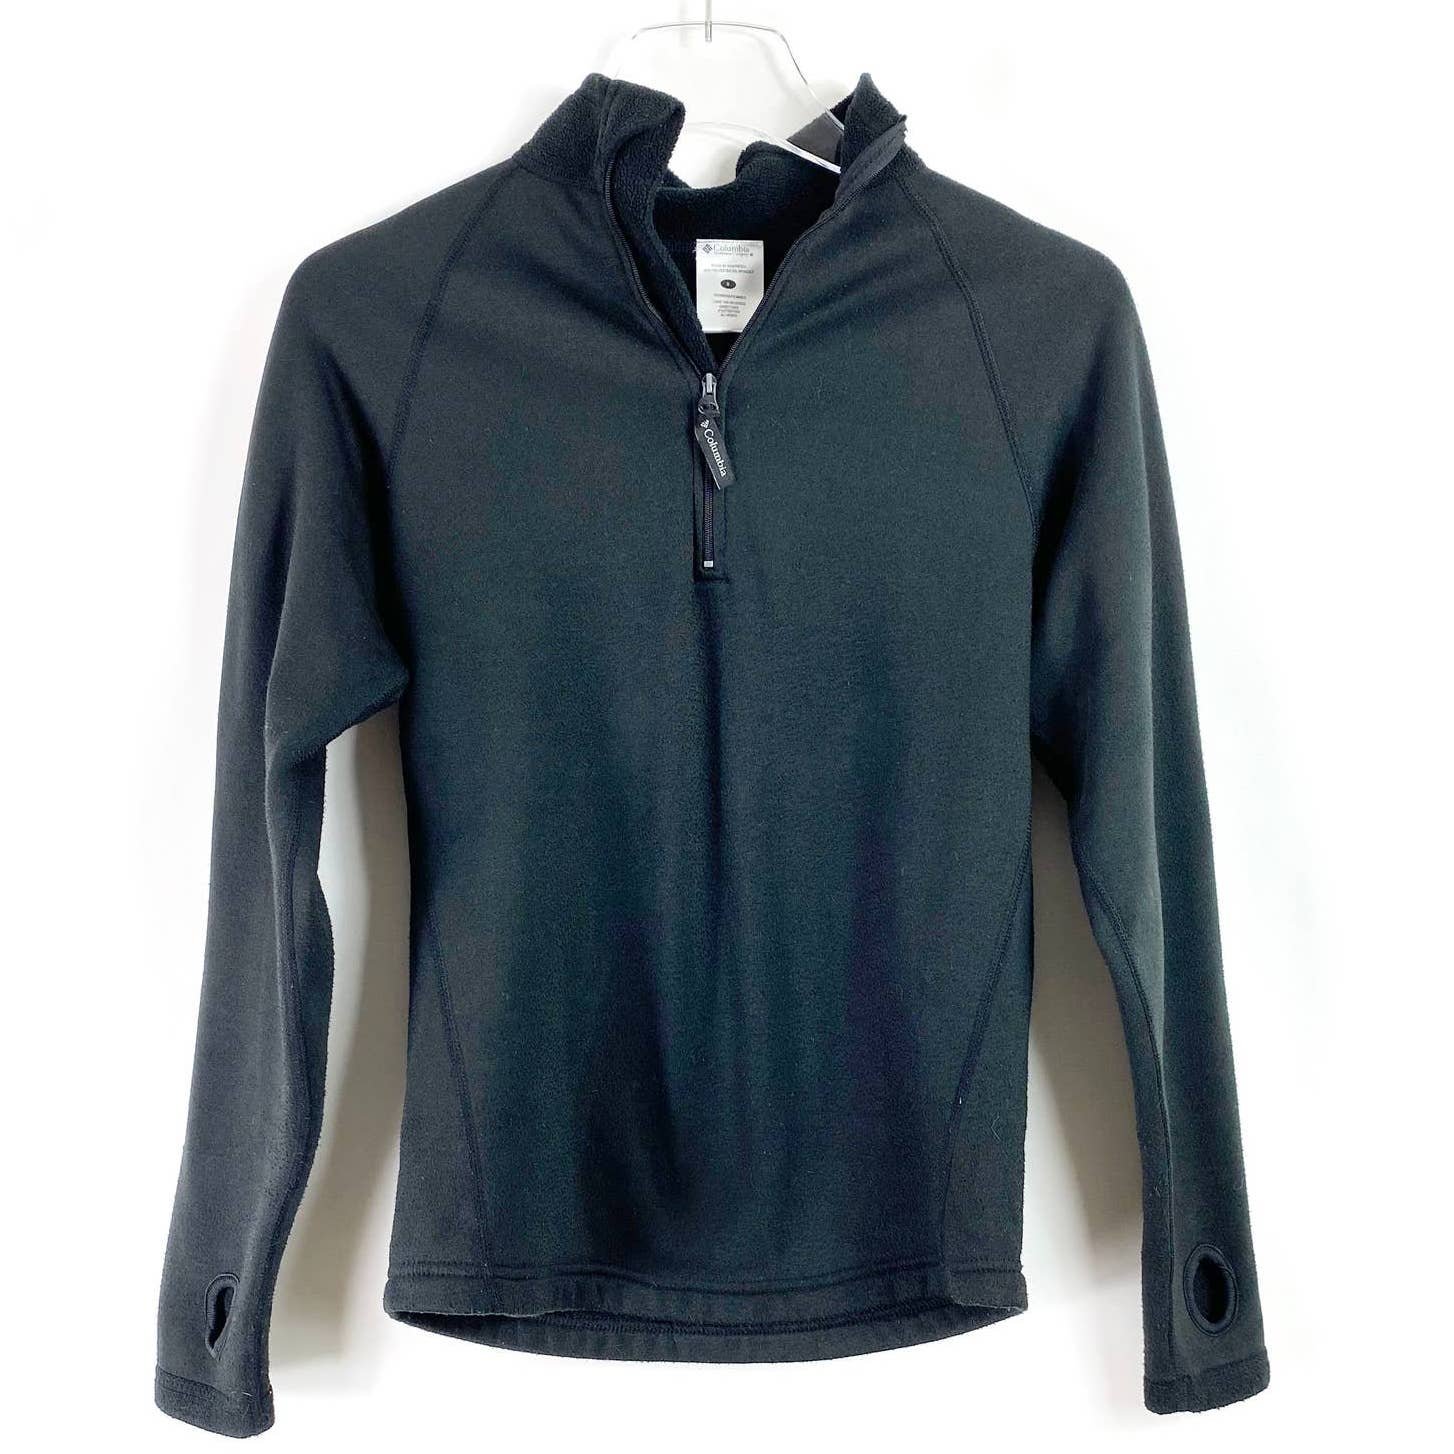 Discounted COLUMBIA Black Fleece Half Zip Jacket owXVtt